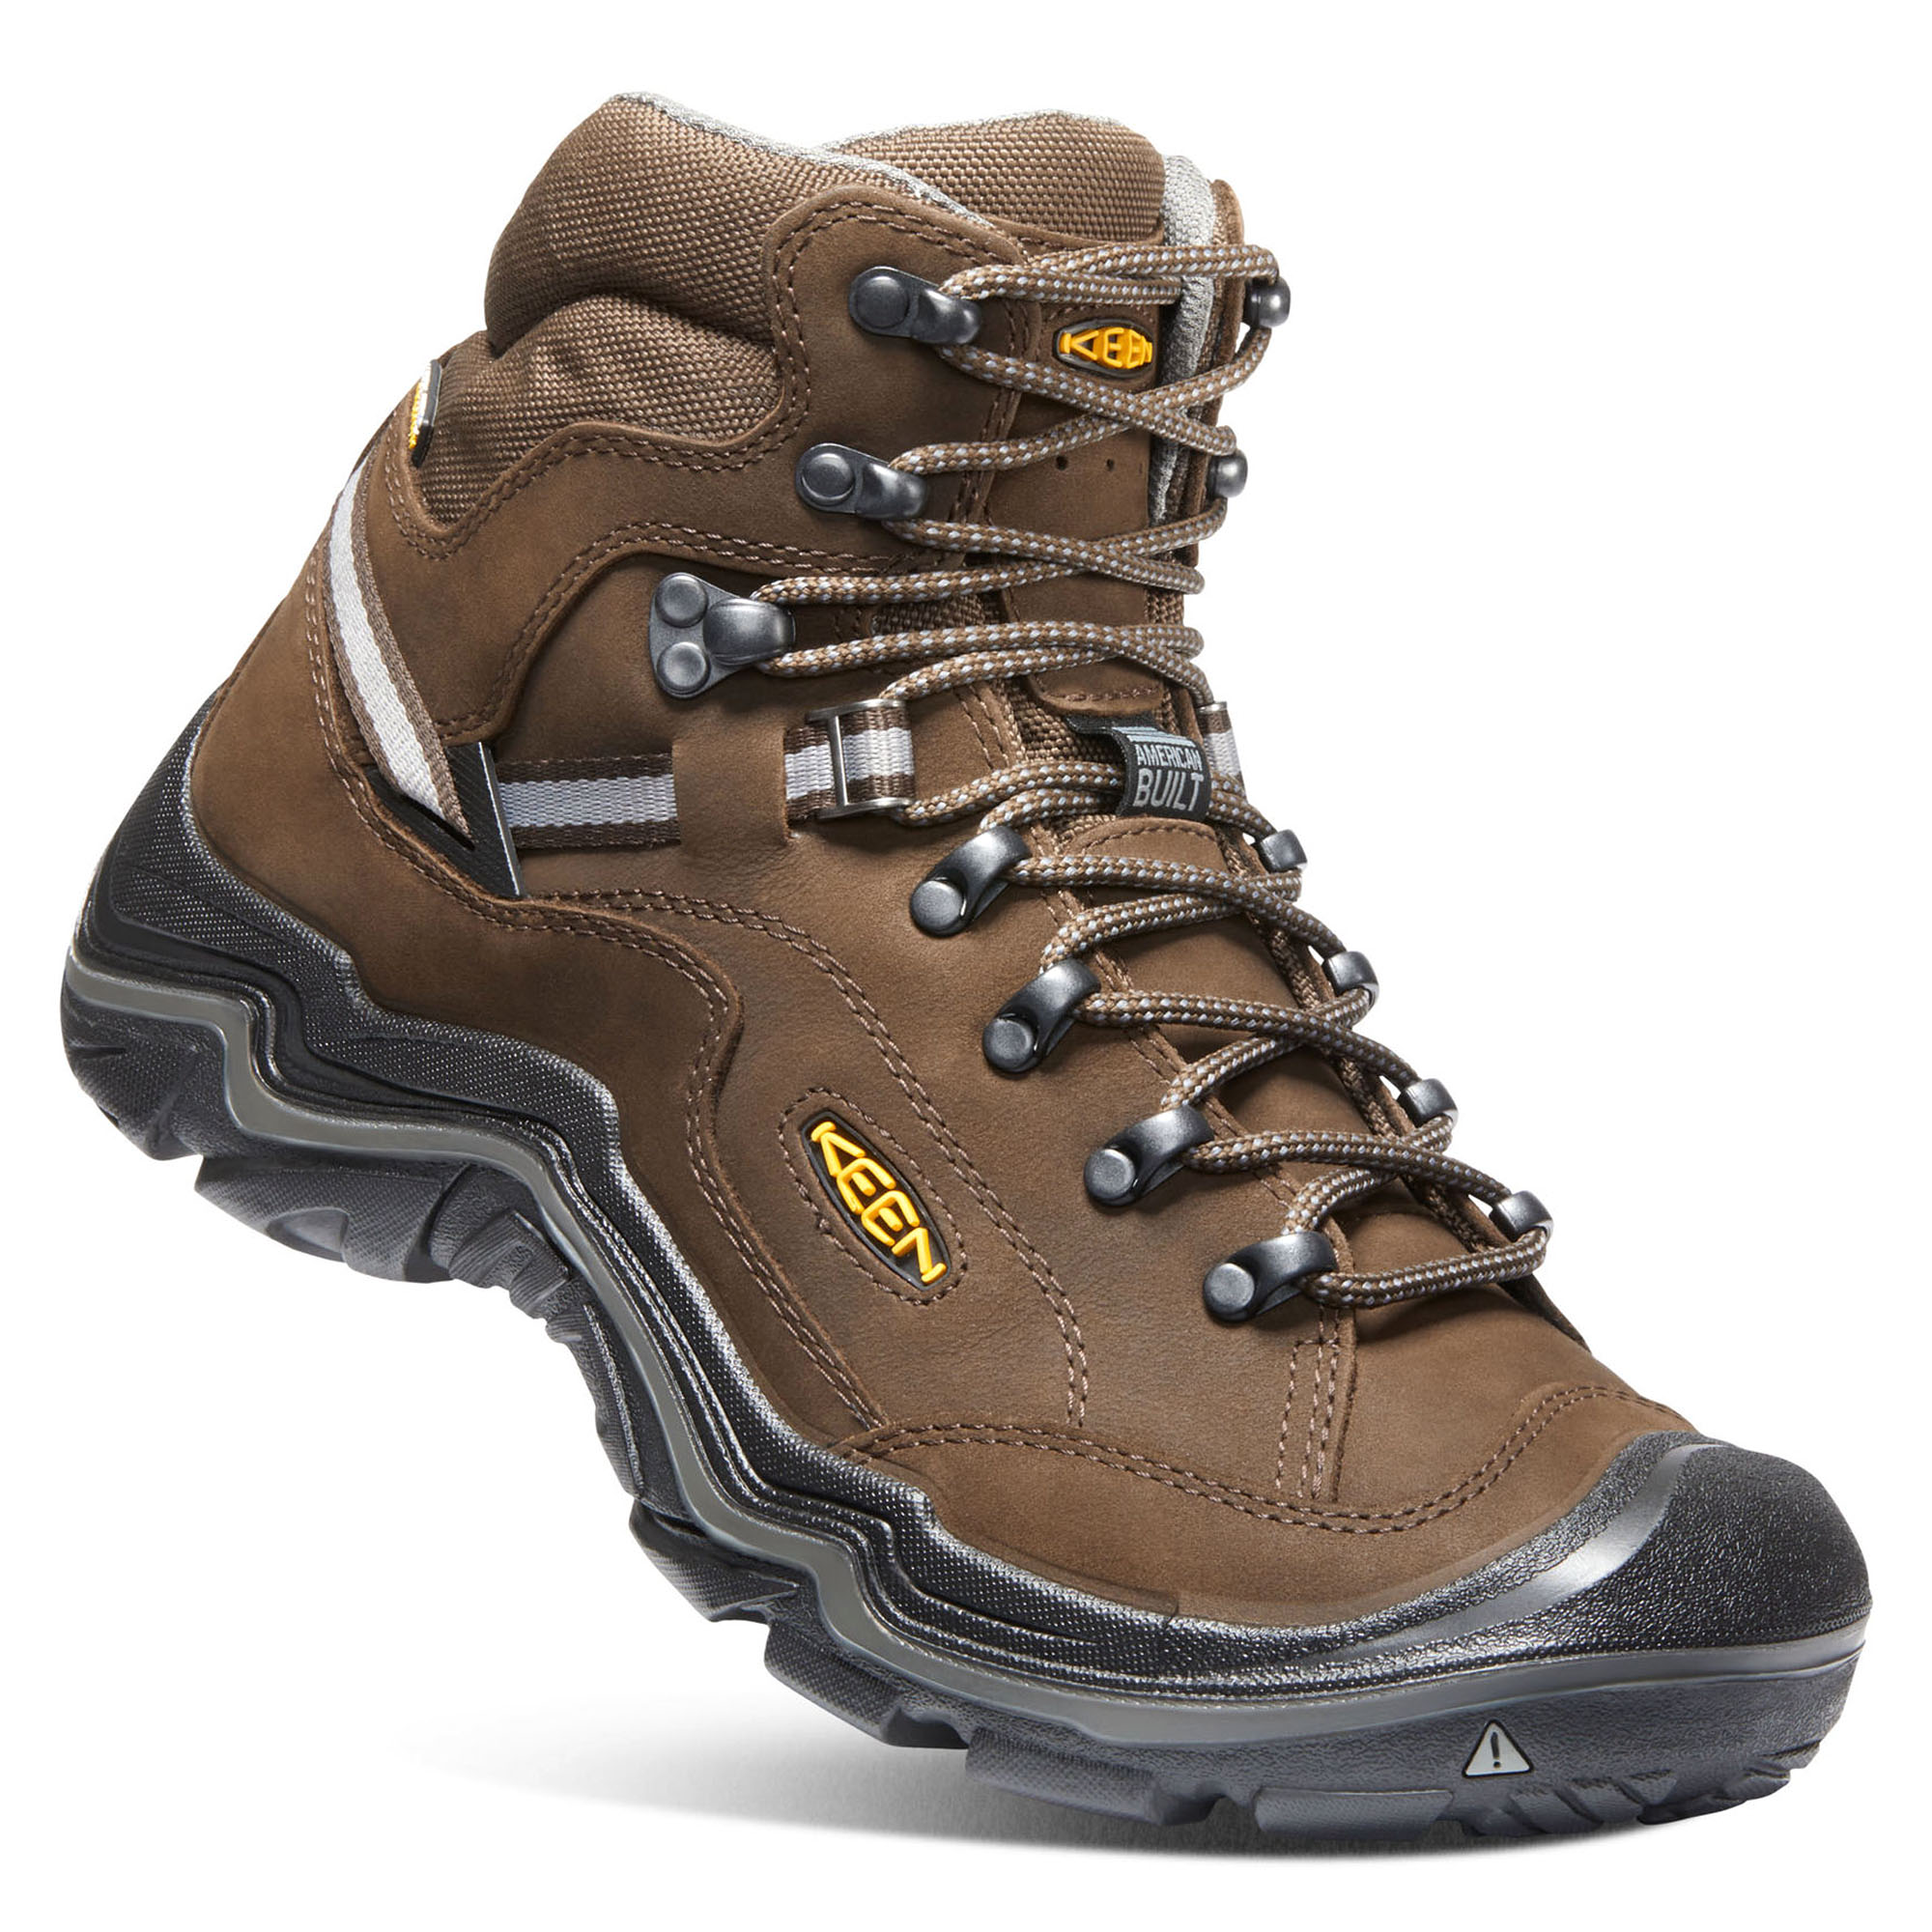 Keen Men's Durand II Mid Waterproof Hiking Boots -  00191190233214